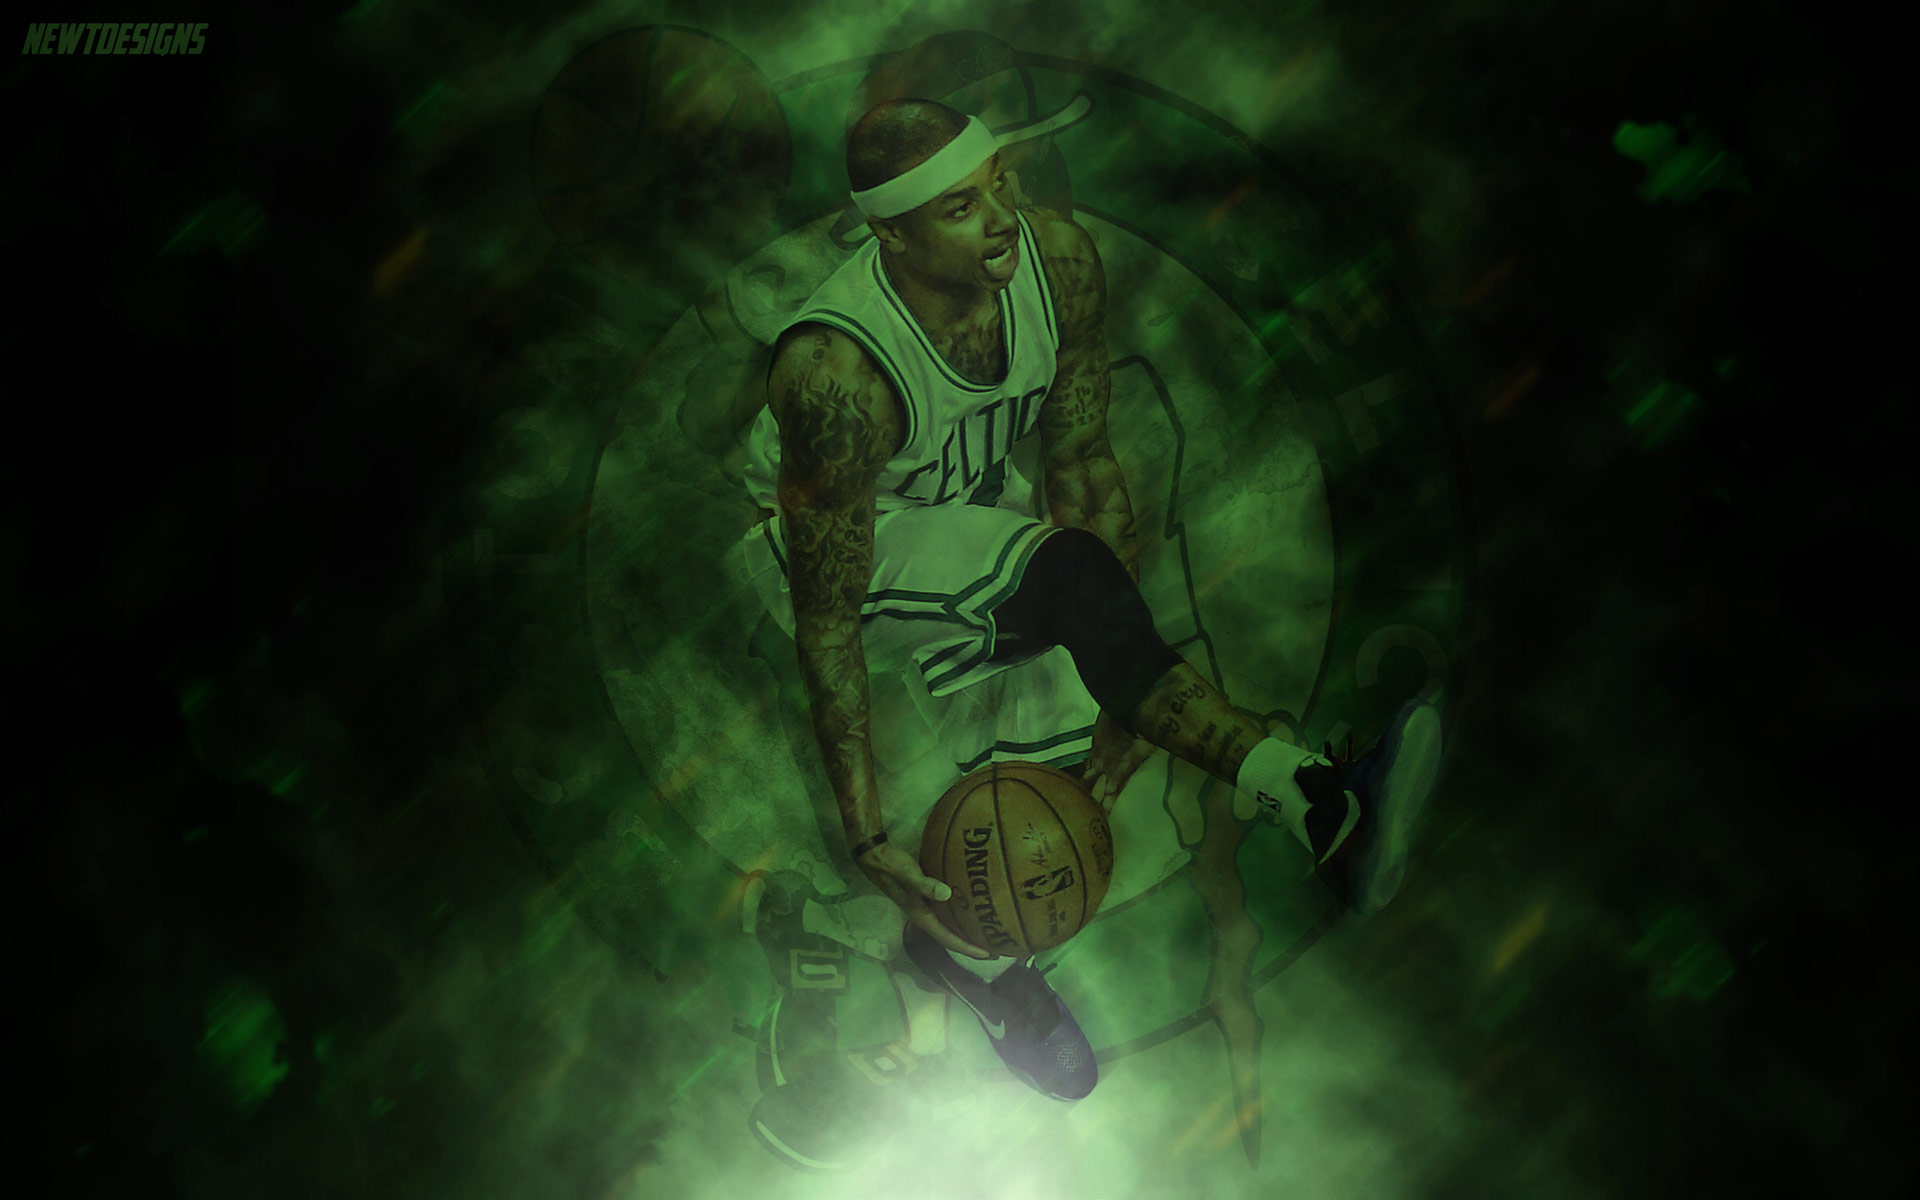 Isaiah Thomas Boston Celtics Wallpaper Basketball At